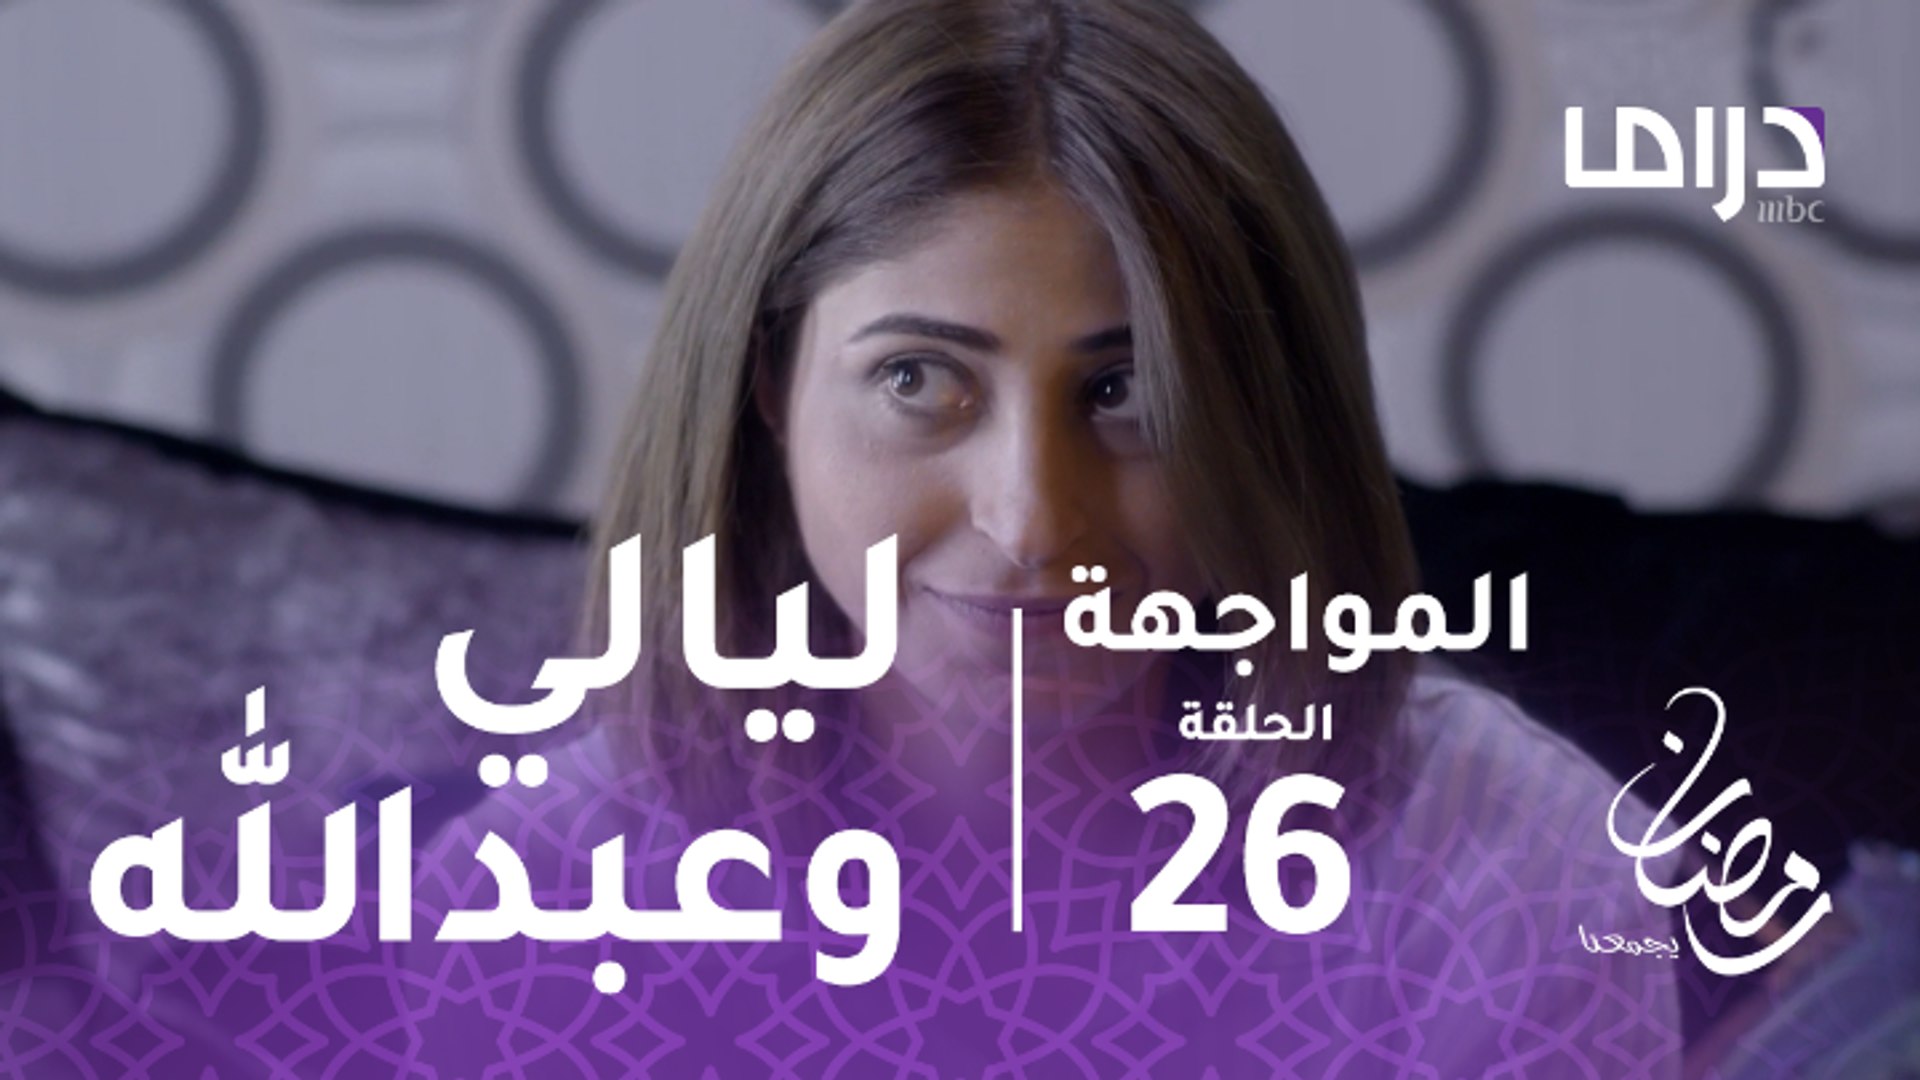 المواجهة - الحلقة 26 - عبد الله يفاجئ ليالي ويذهب إلي منزلها - فيديو  Dailymotion